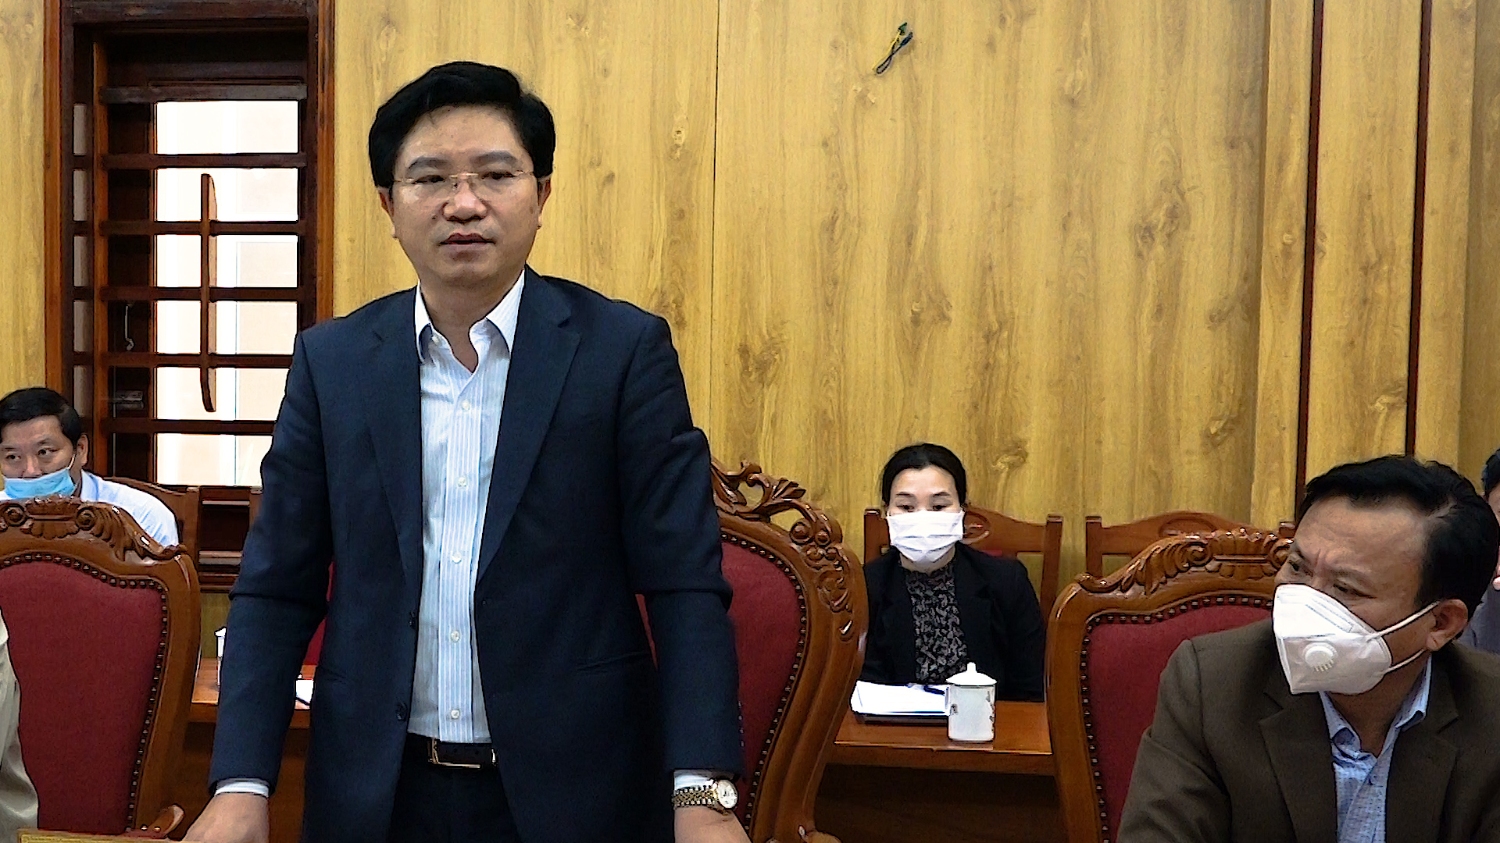 đồng chí Bí thư Thị ủy Trương An Ninh tiếp thu các ý kiến chỉ đạo của đồng chí Trưởng Ban Nội chính